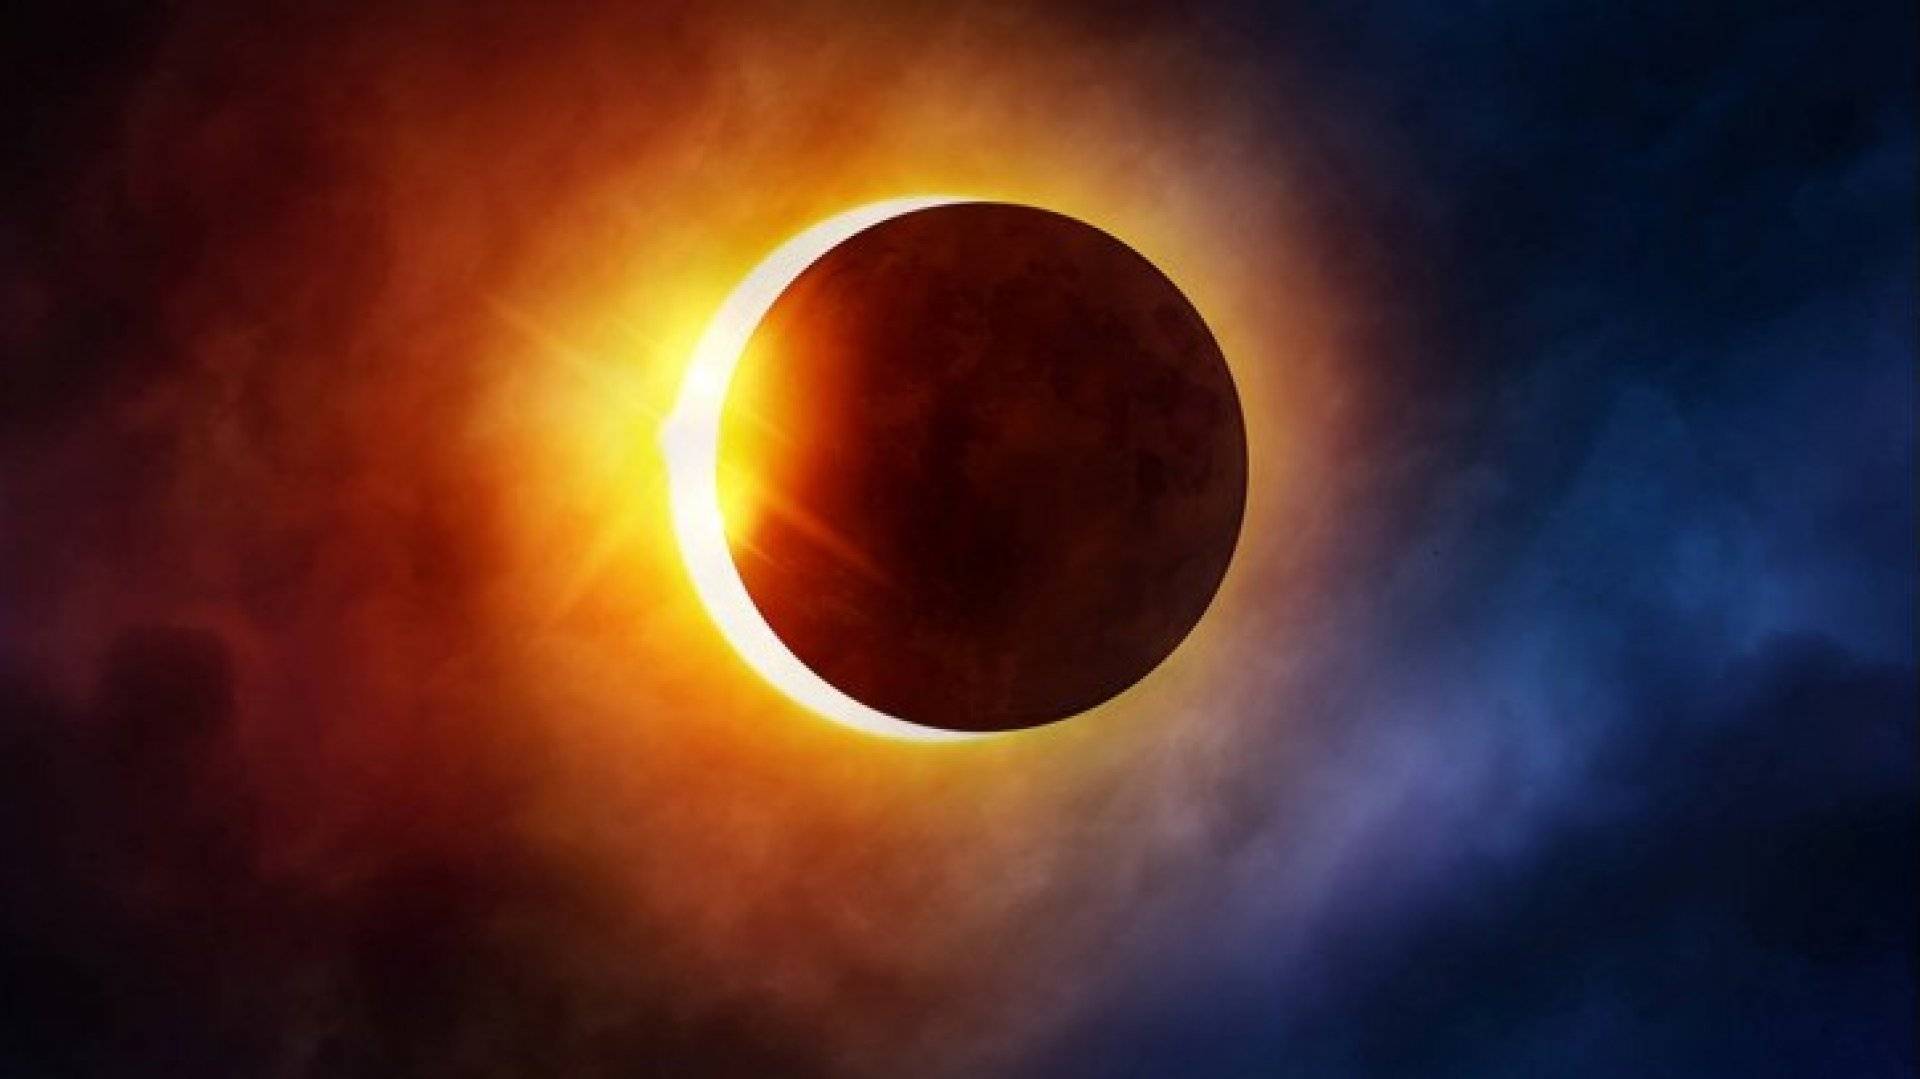 Astăzi este eclipsă totală de soare, al 14-lea astfel de fenomen din secolul 21. Unde se va vedea eclipsa neobișnuită